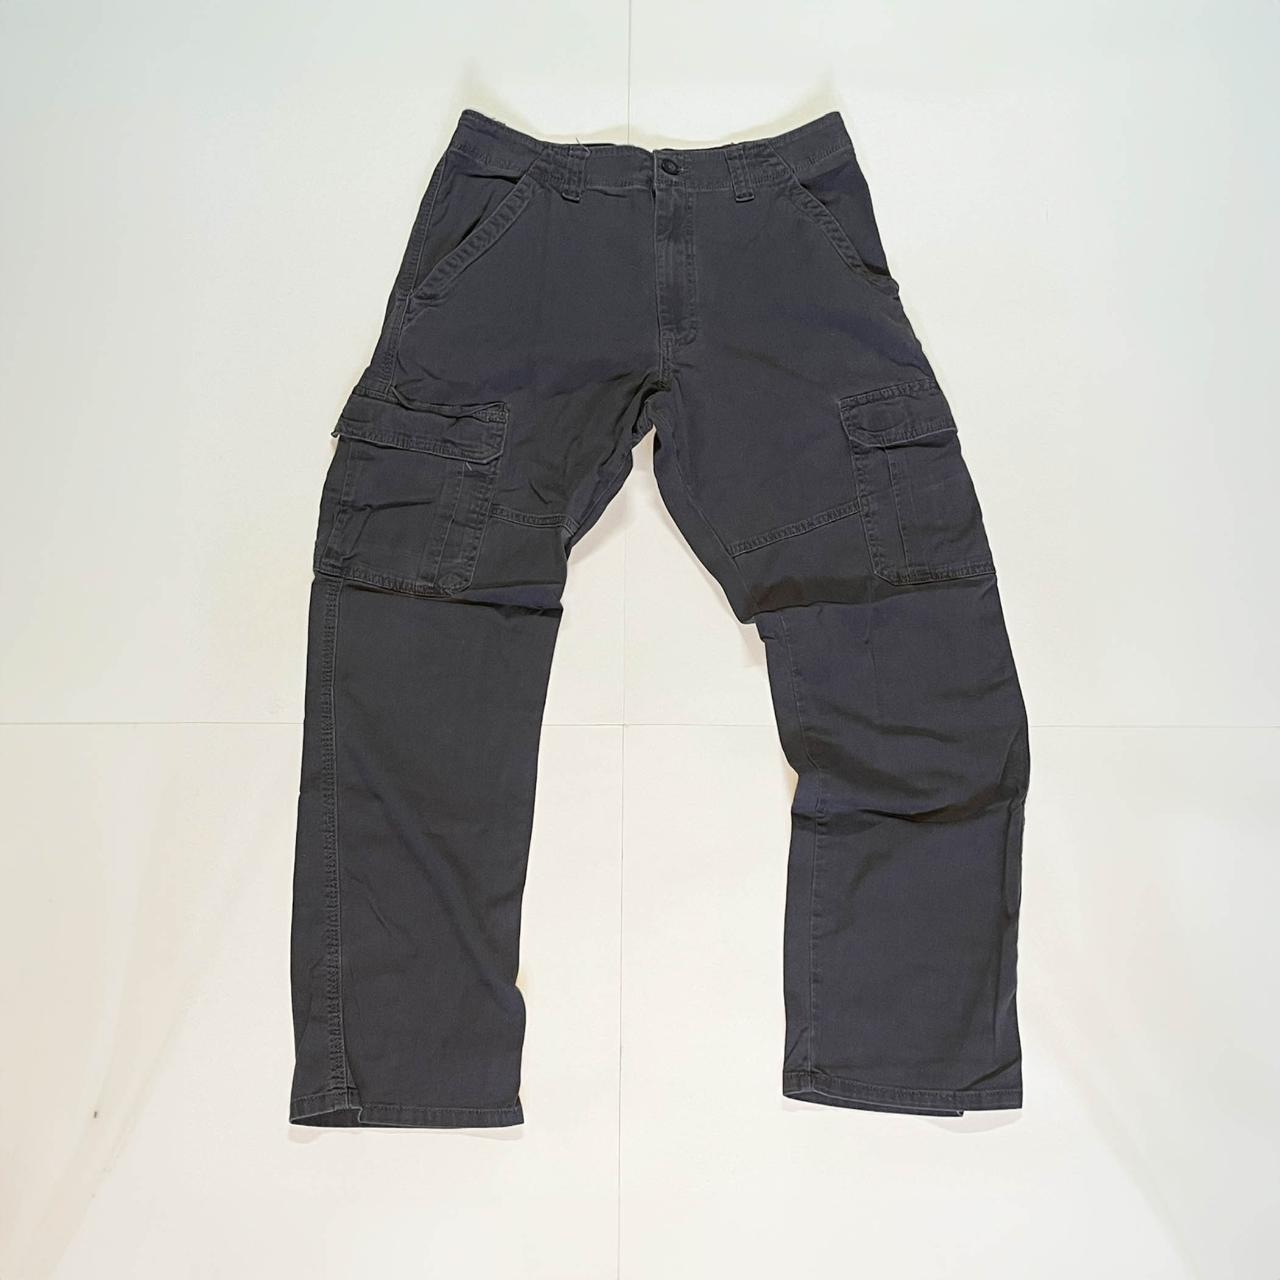 Men's Wrangler Cargo Pants Size 32x32 🔥 sick pair of... - Depop